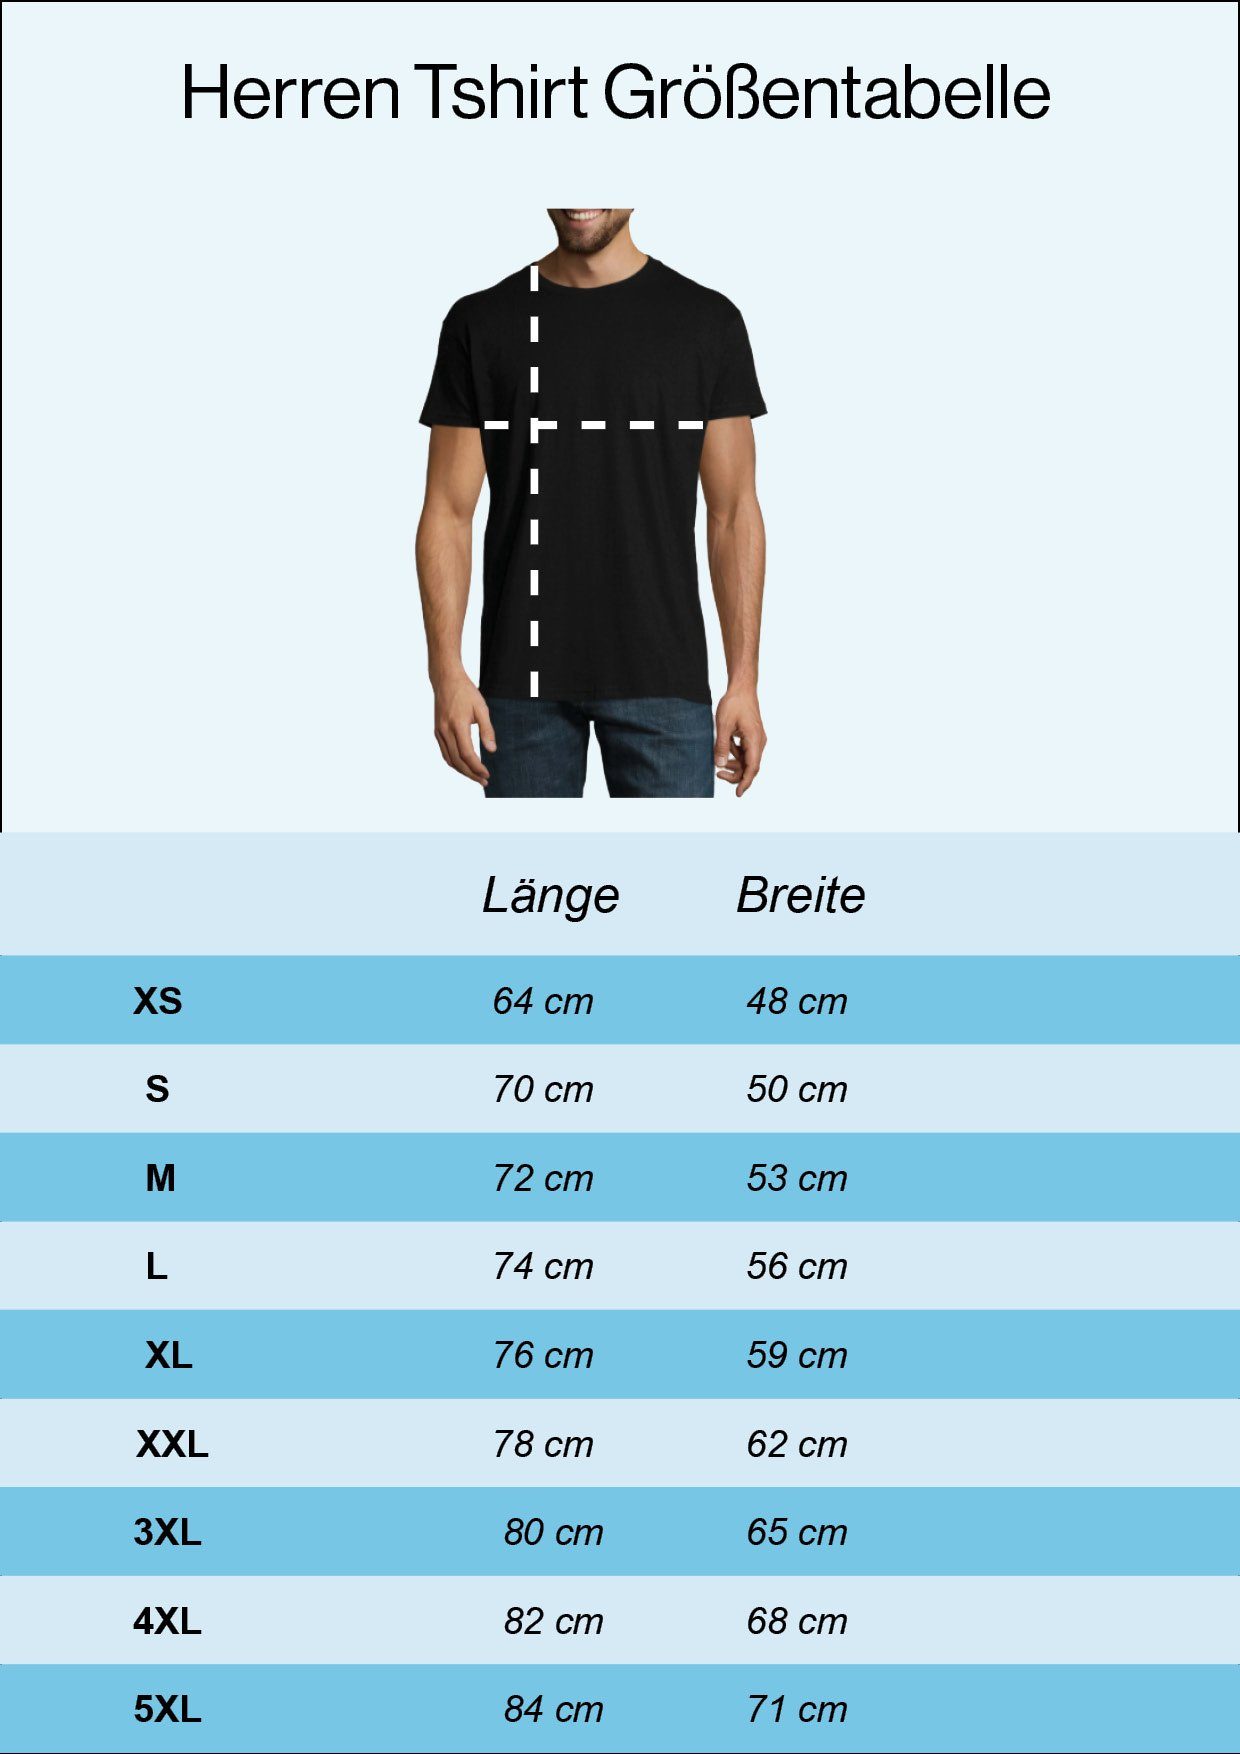 Frontprint Designz Super lustigem Papa Grau T-Shirt mit Youth Herren Shirt